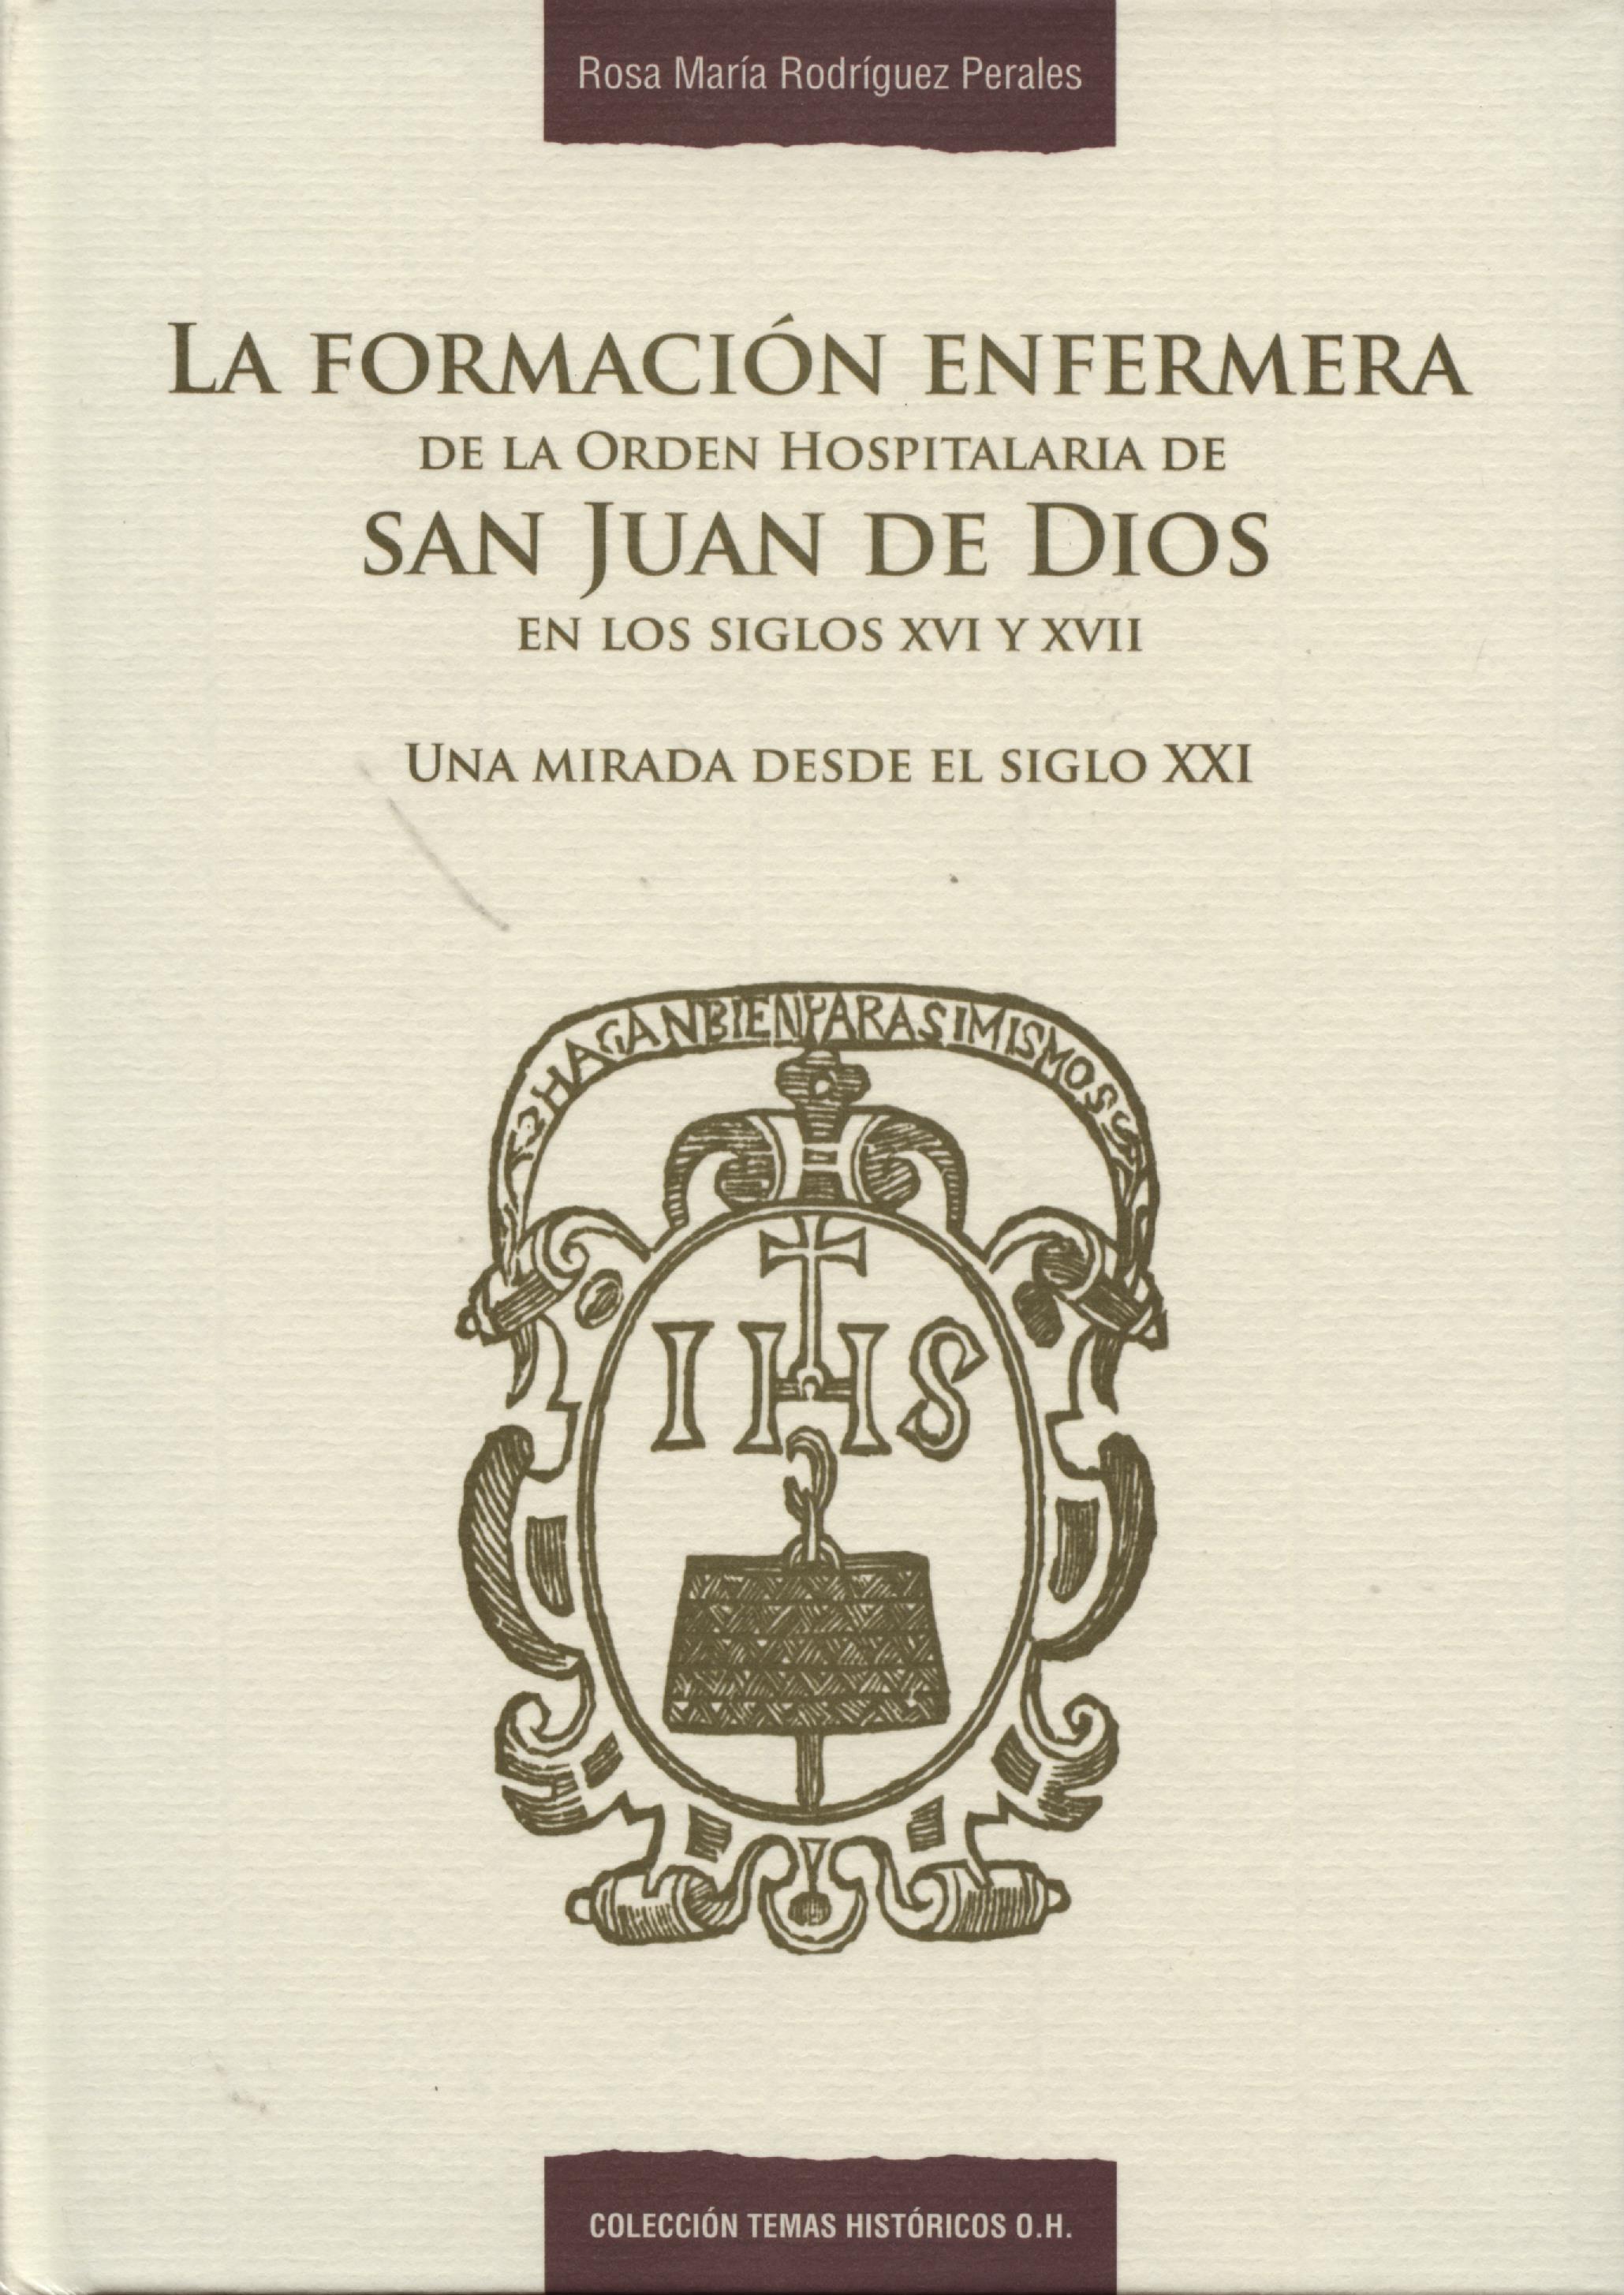 La formación enfermera de la Orden Hospitalaria de San Juan de Dios en los siglos XVI-XVII. 